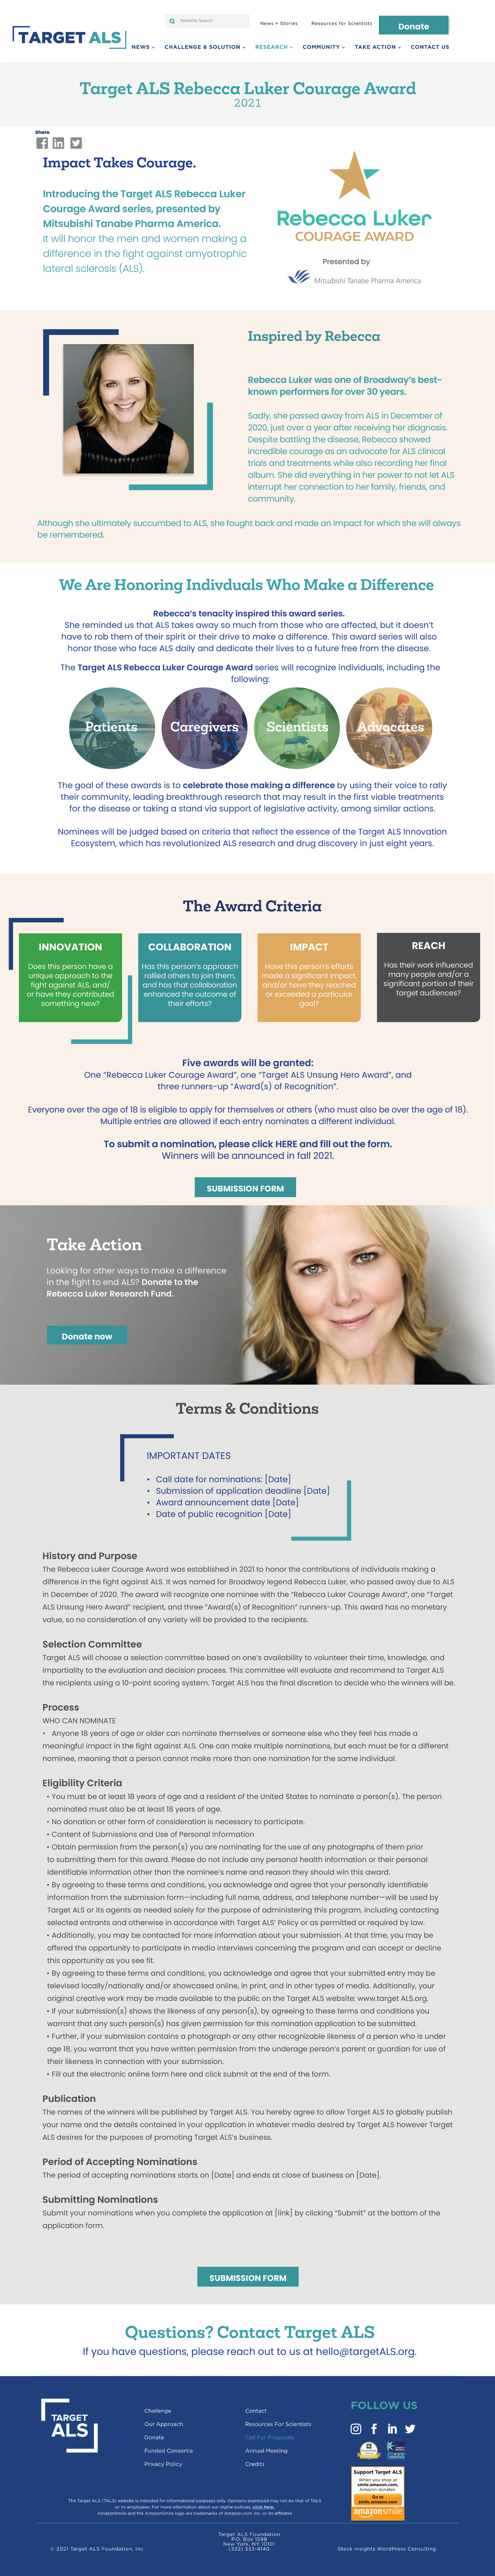 Target ALS Rebecca Luker Courage Award-web mockup